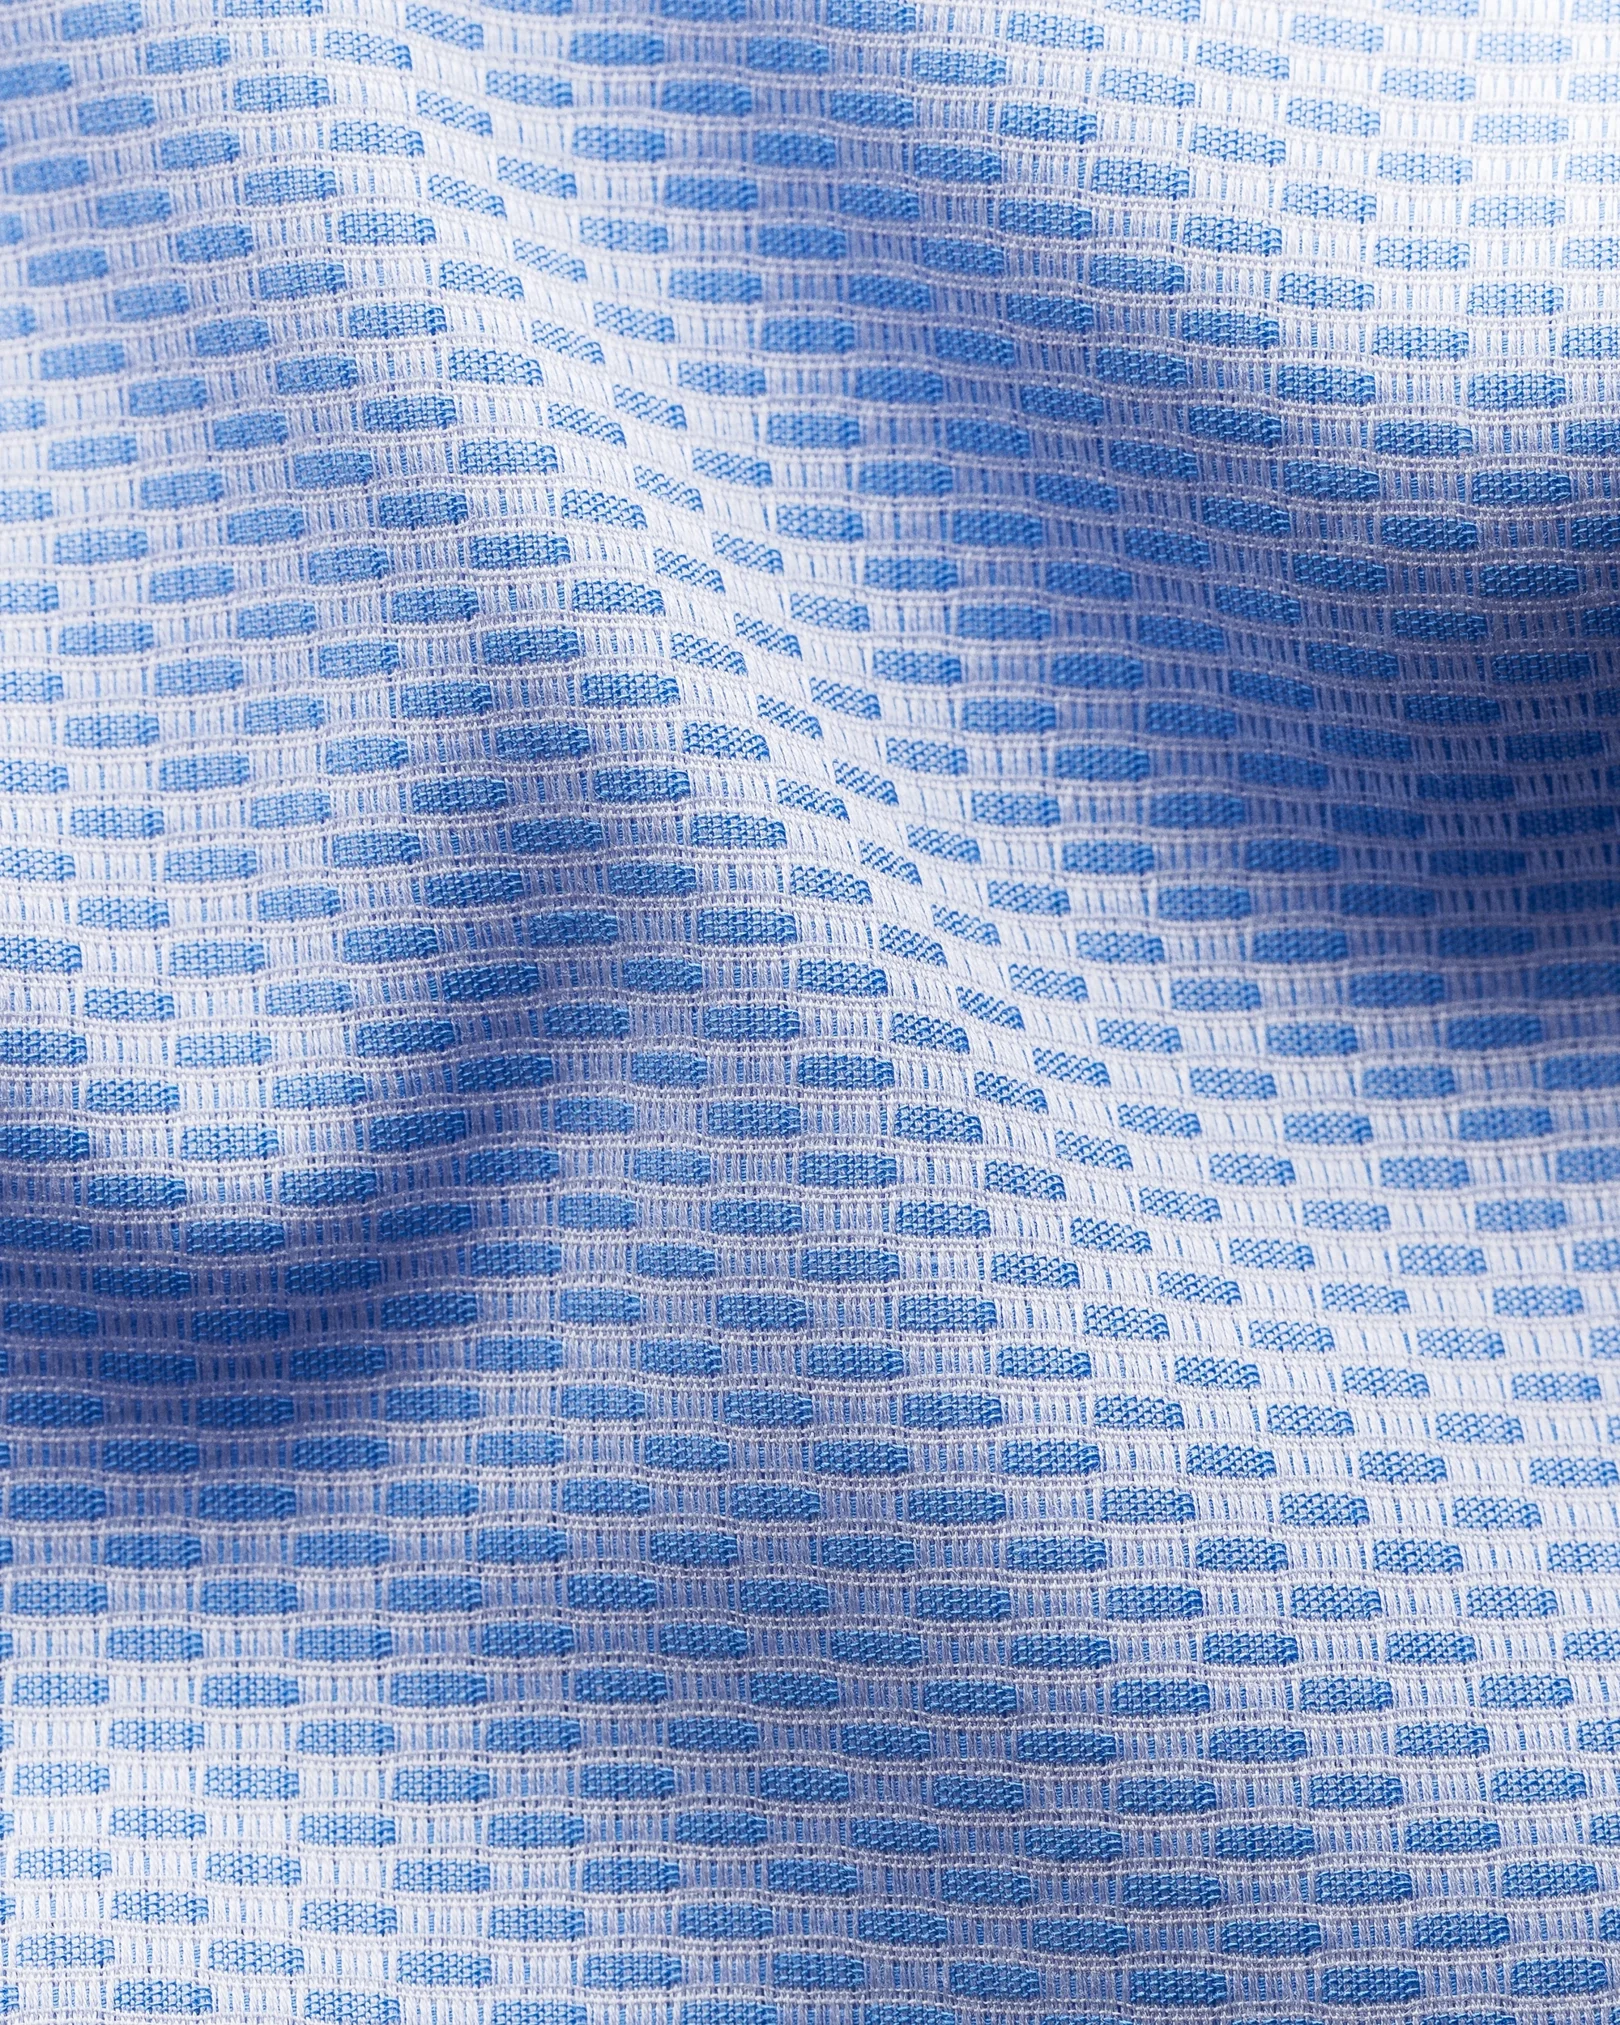 Eton - light blue textured twill shirt cut away